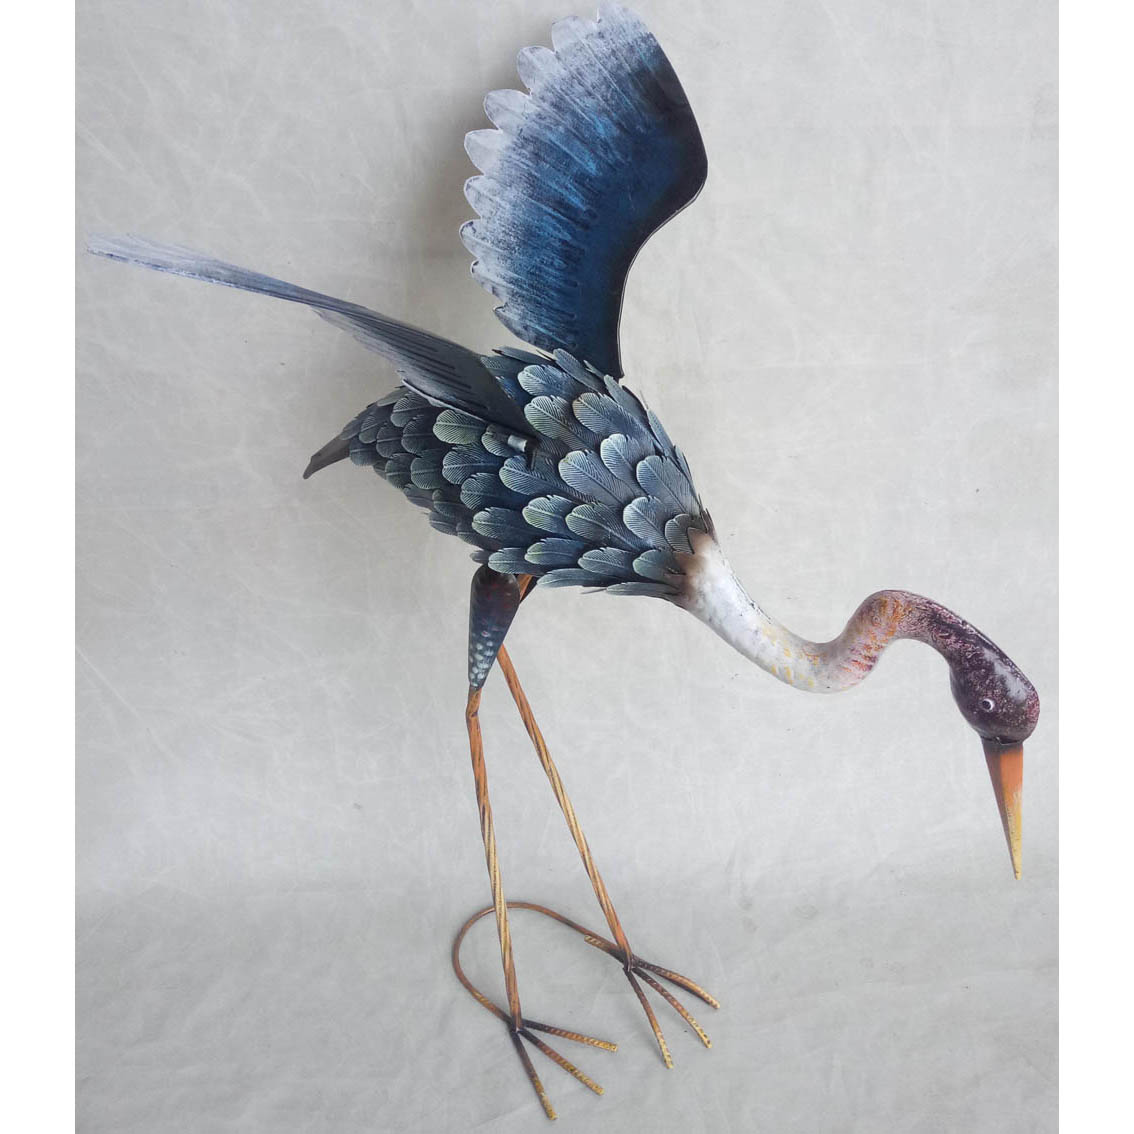 Hand-made metal garden decor bird ornament